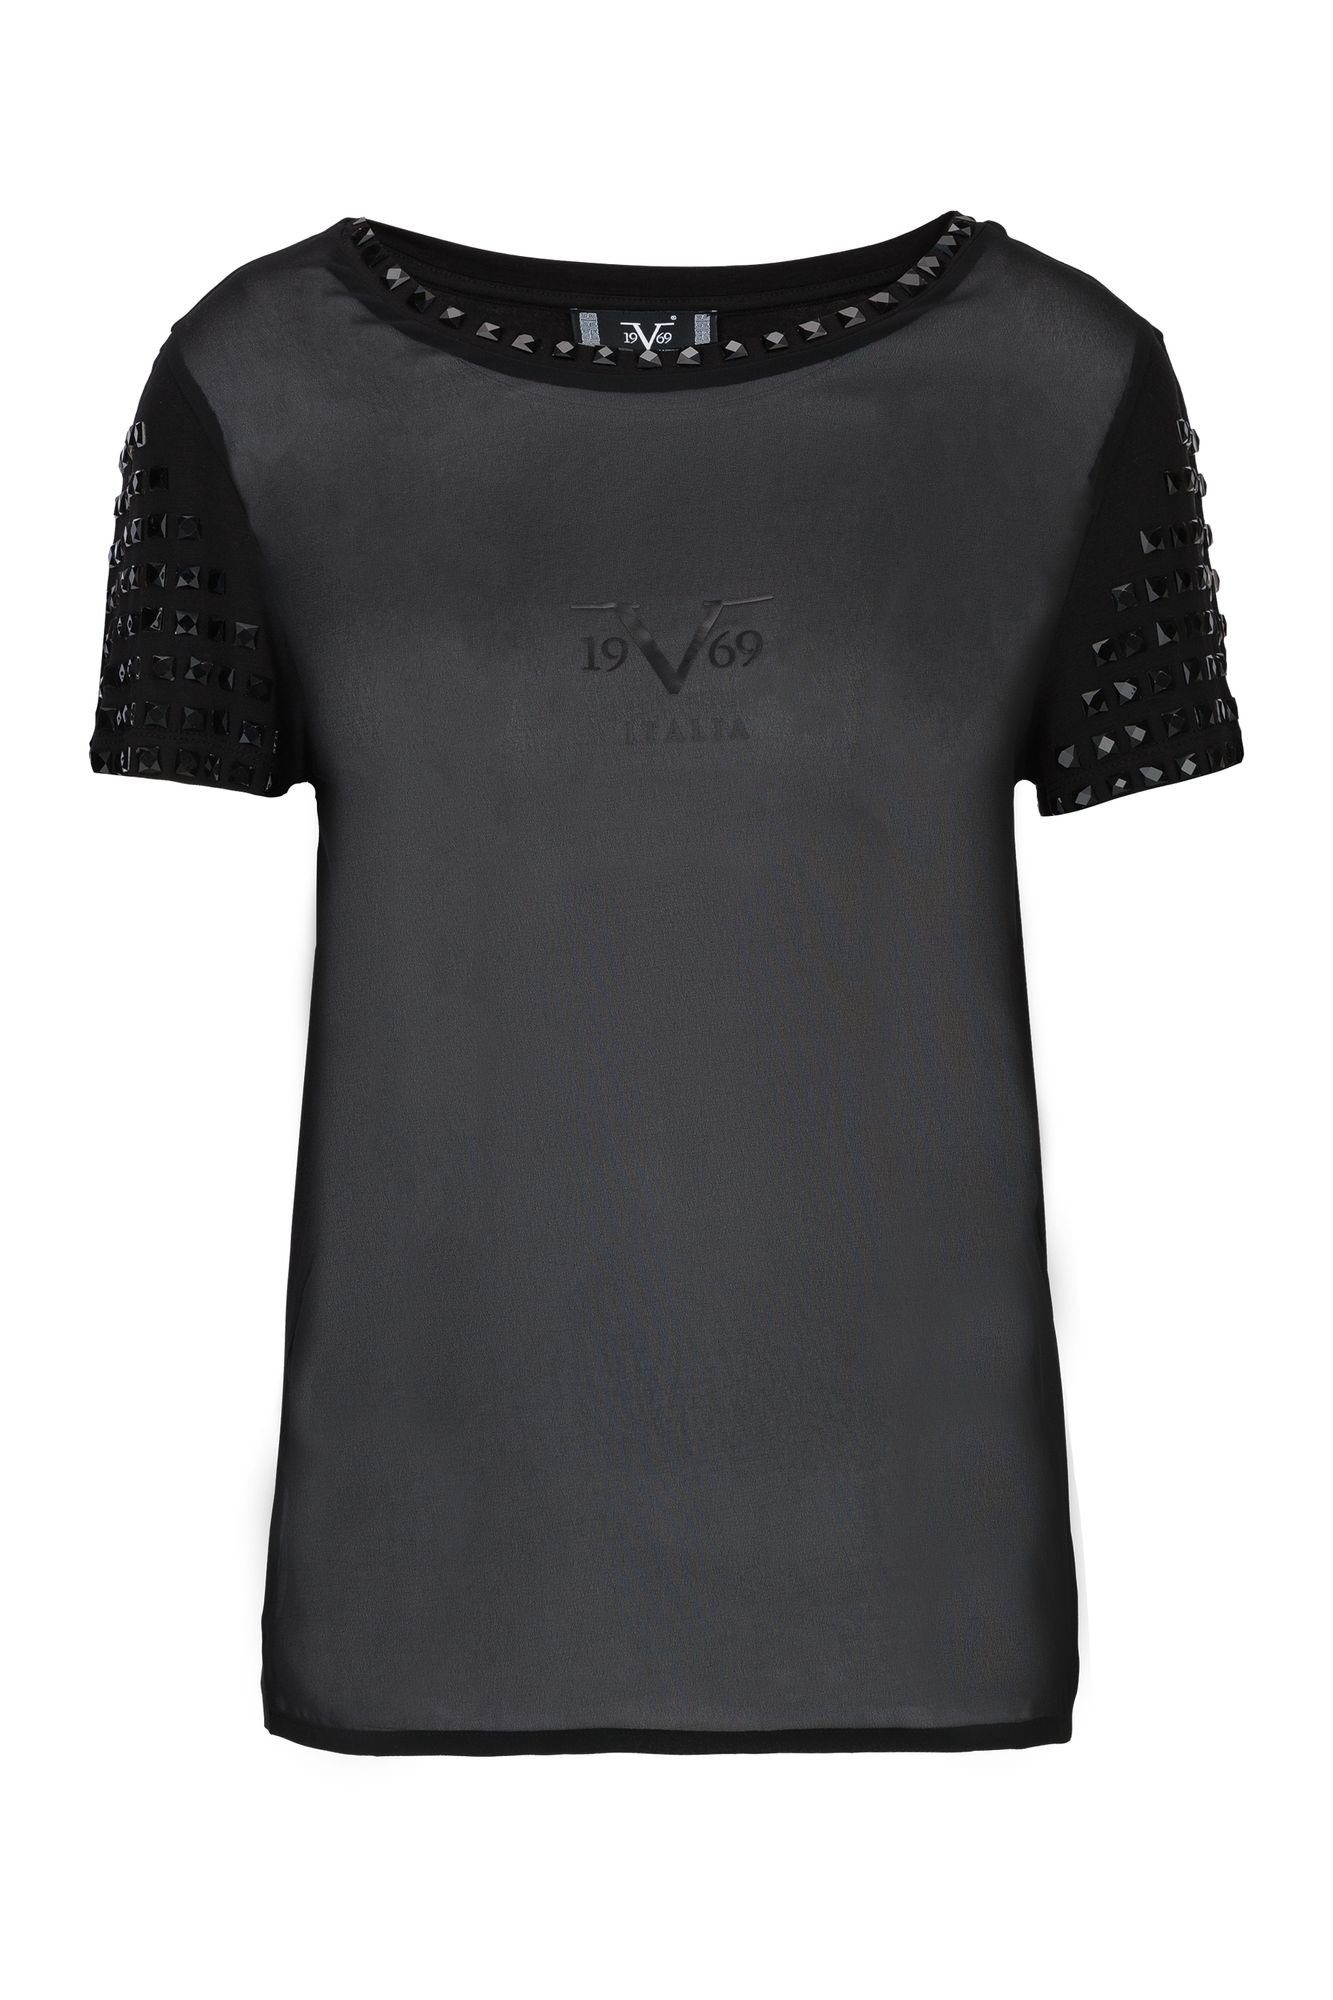 19V69 Italia by Versace T-Shirt Miriam | T-Shirts